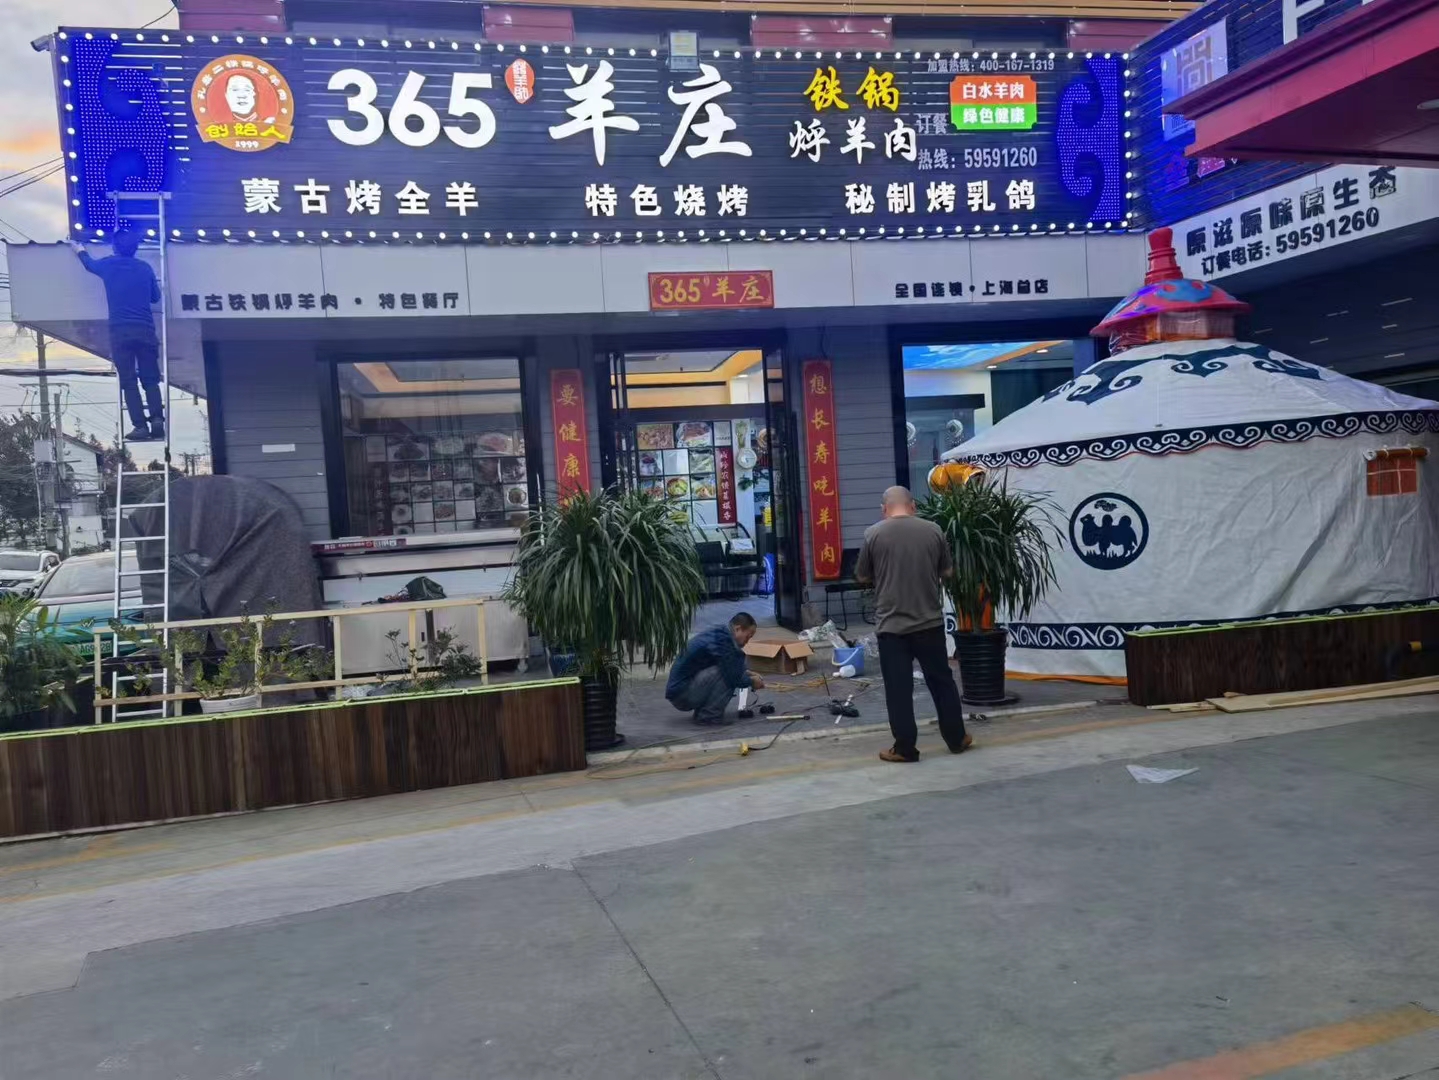 2022年10月12日賀 :   孔老二餐飲365羊莊強勢入住上海嘉定區